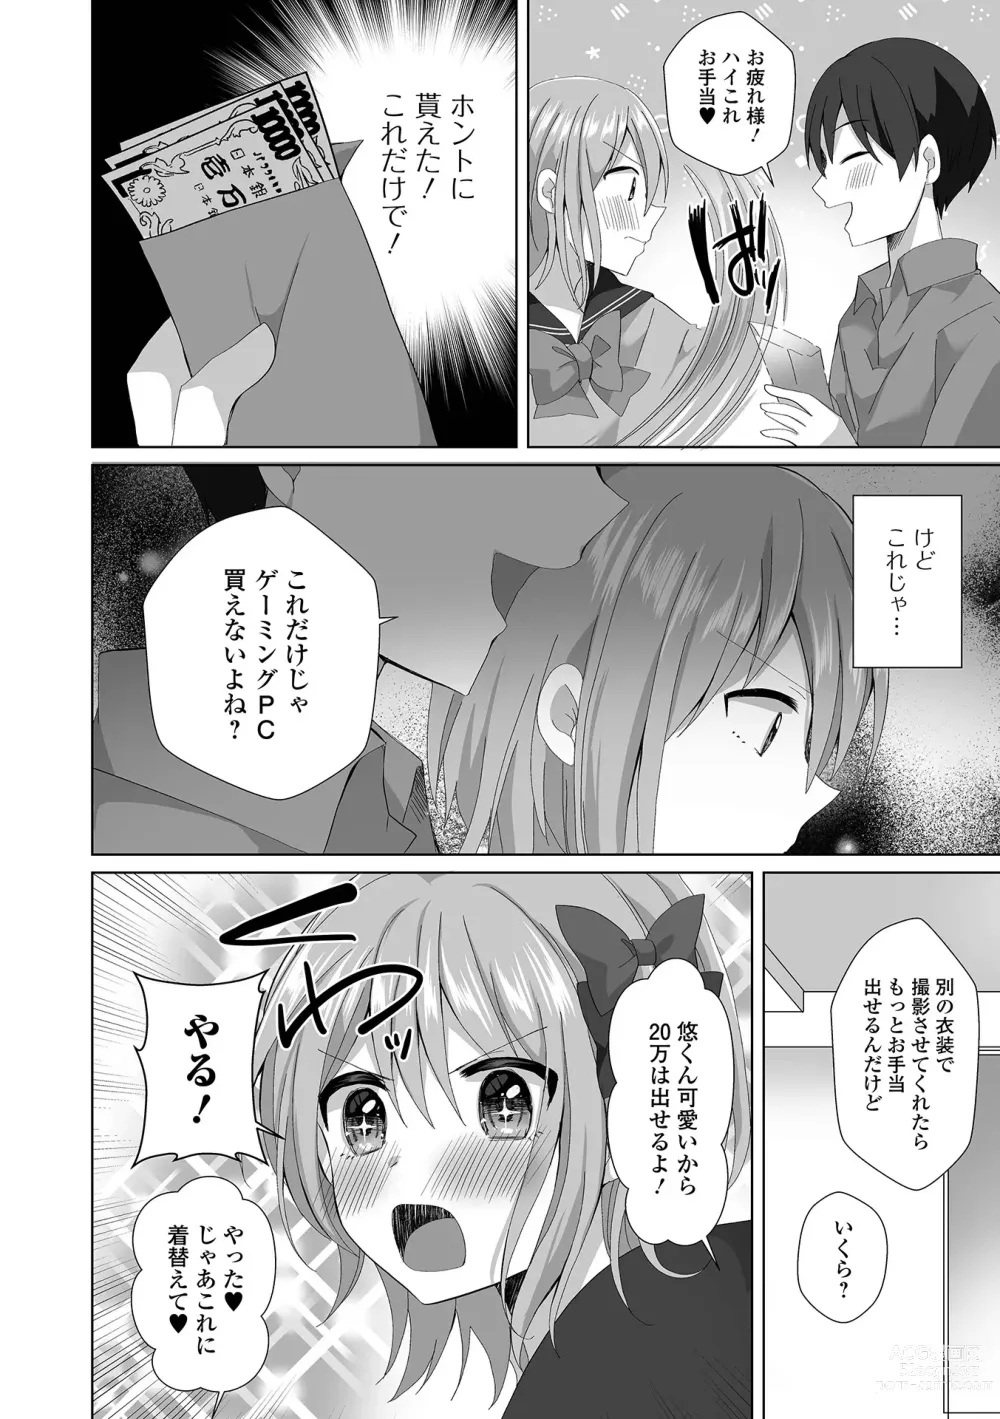 Page 6 of manga Gekkan Web Otoko no Ko-llection! S Vol. 91